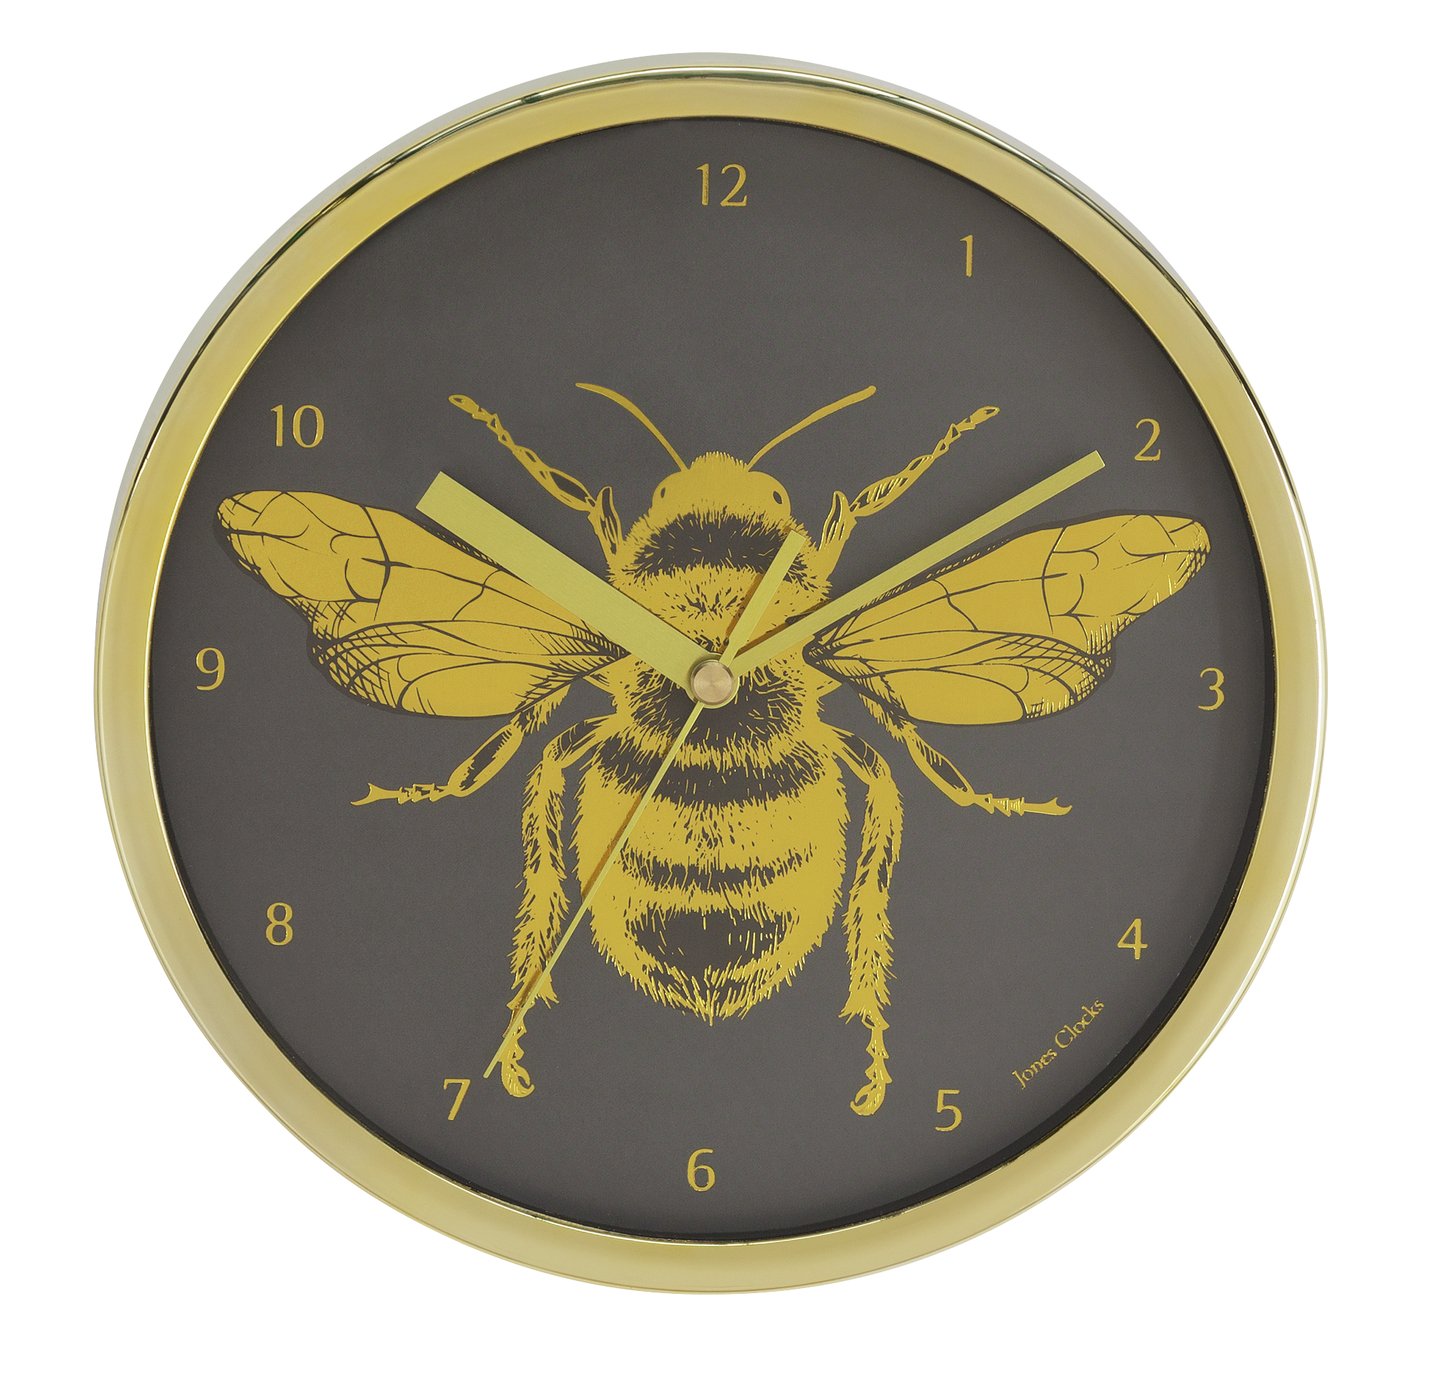 Jones Clocks Bee Wall Clock Review